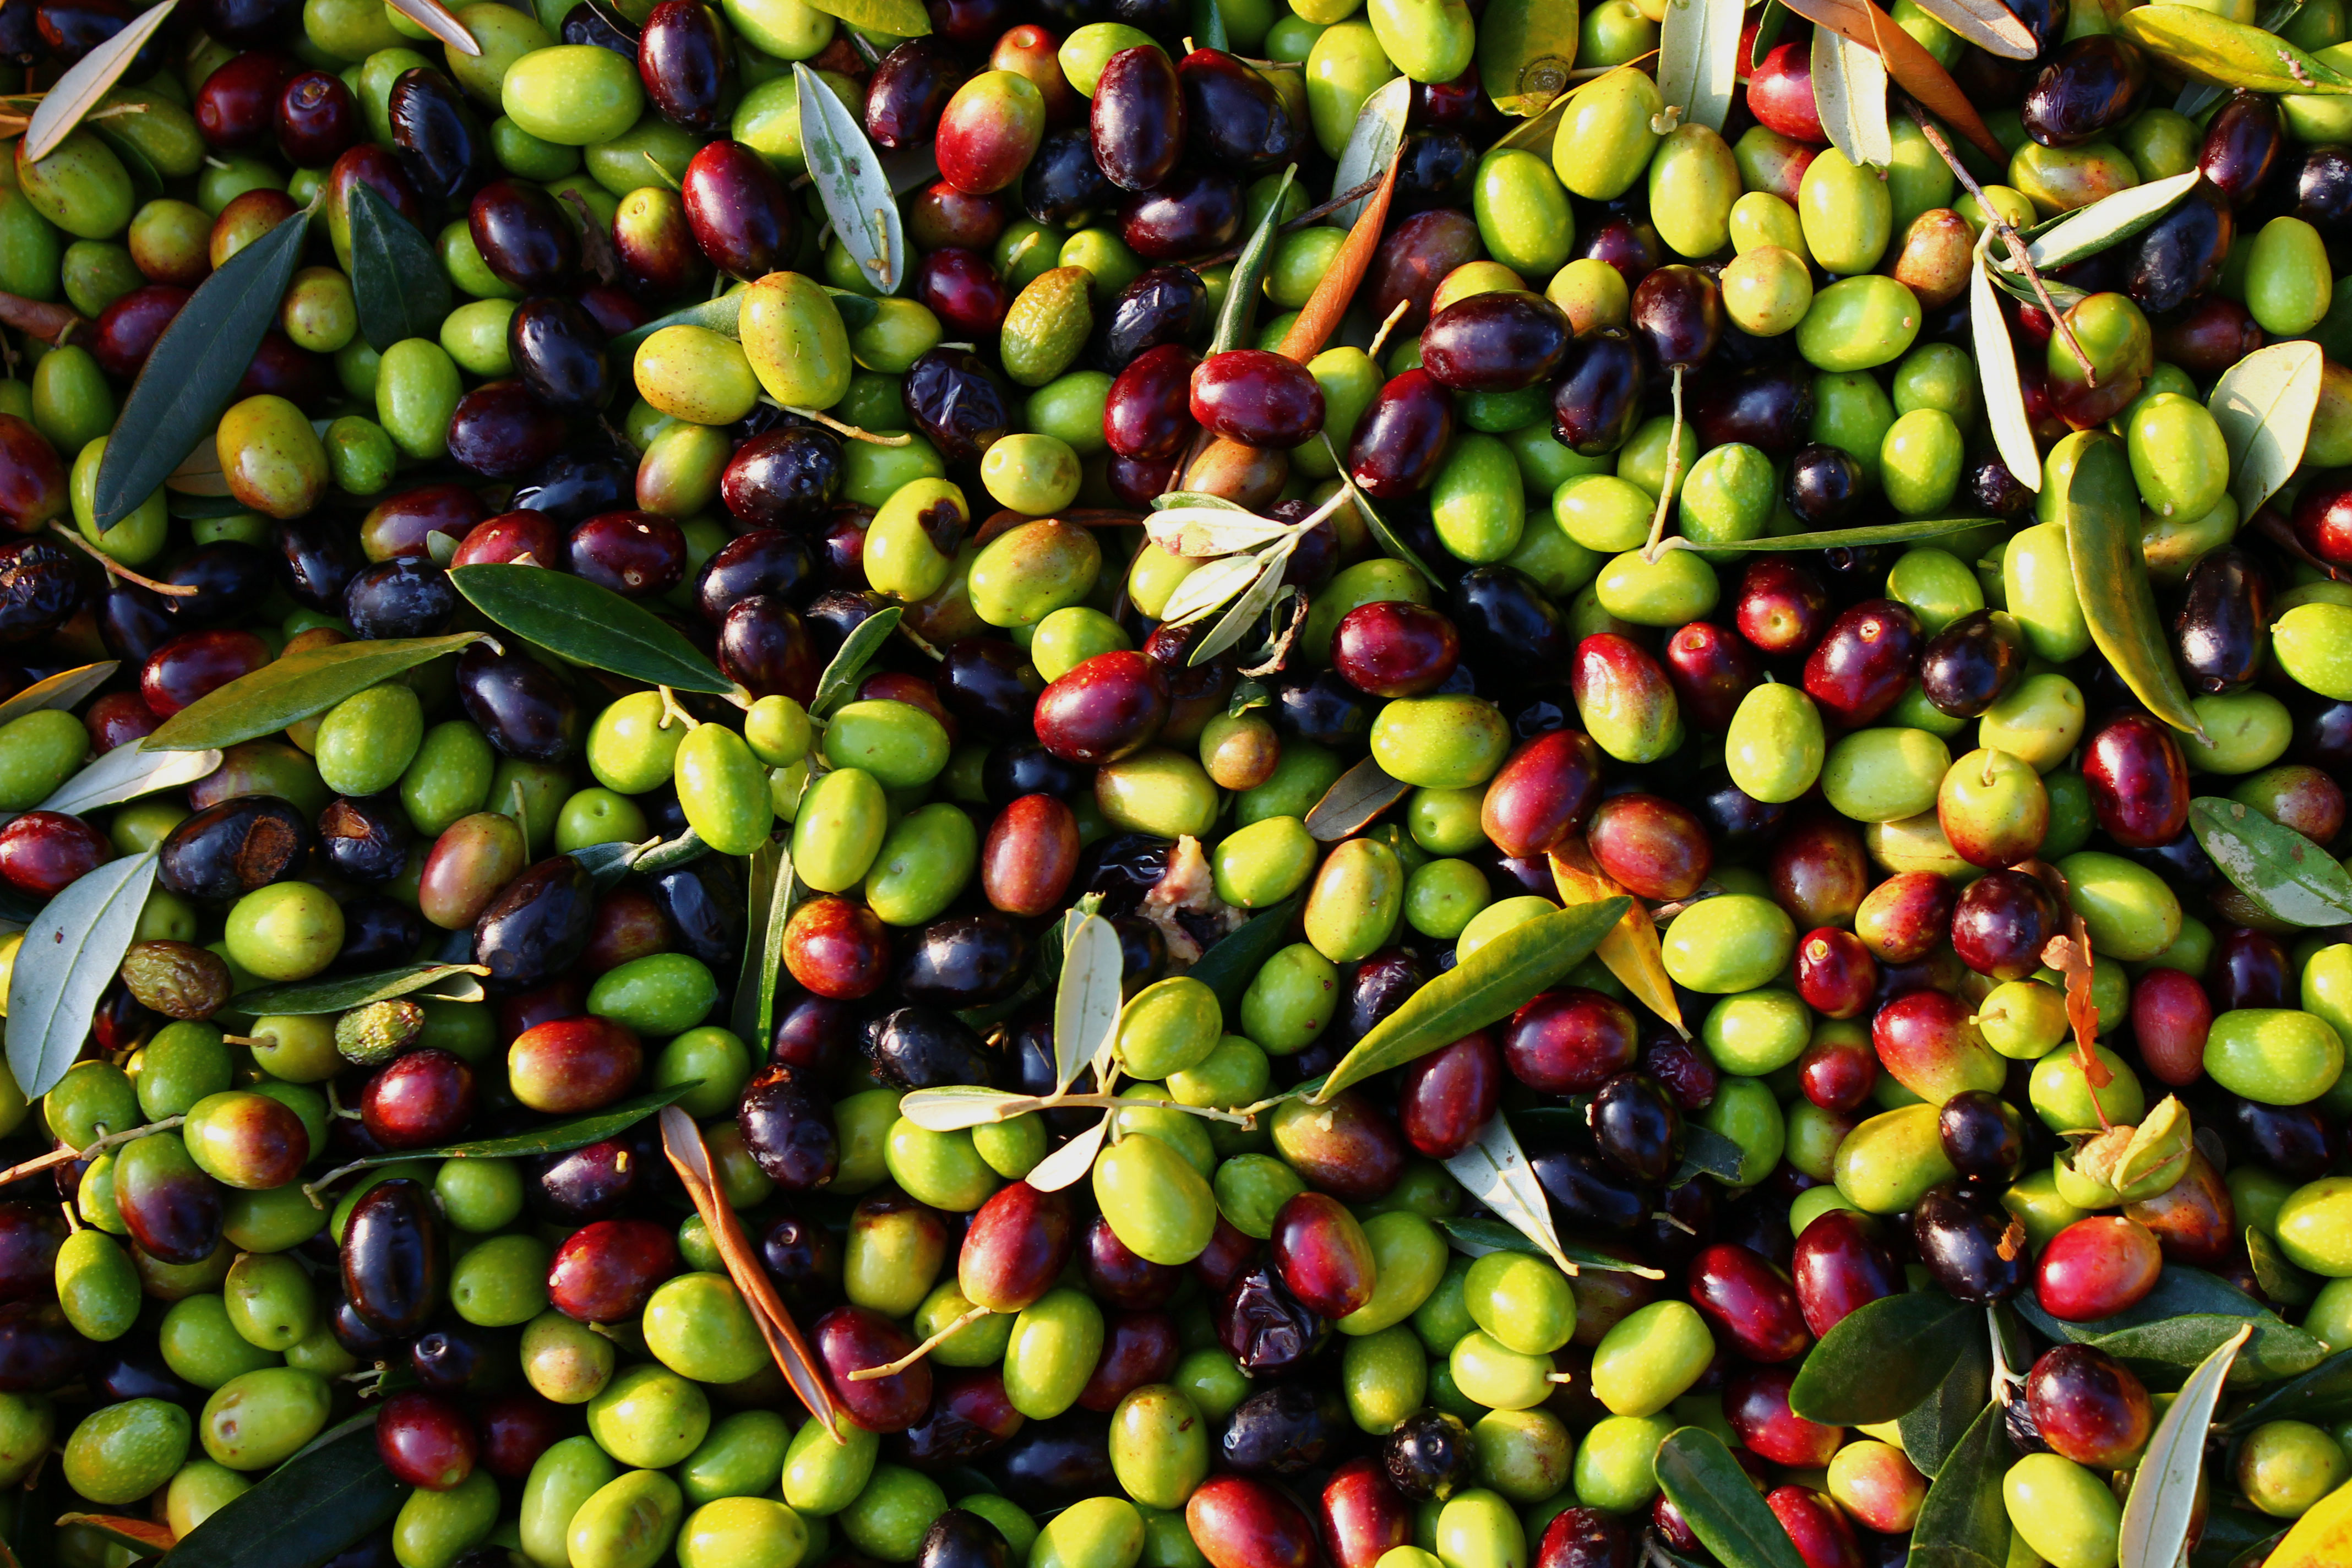 picked-olives-ii.jpg